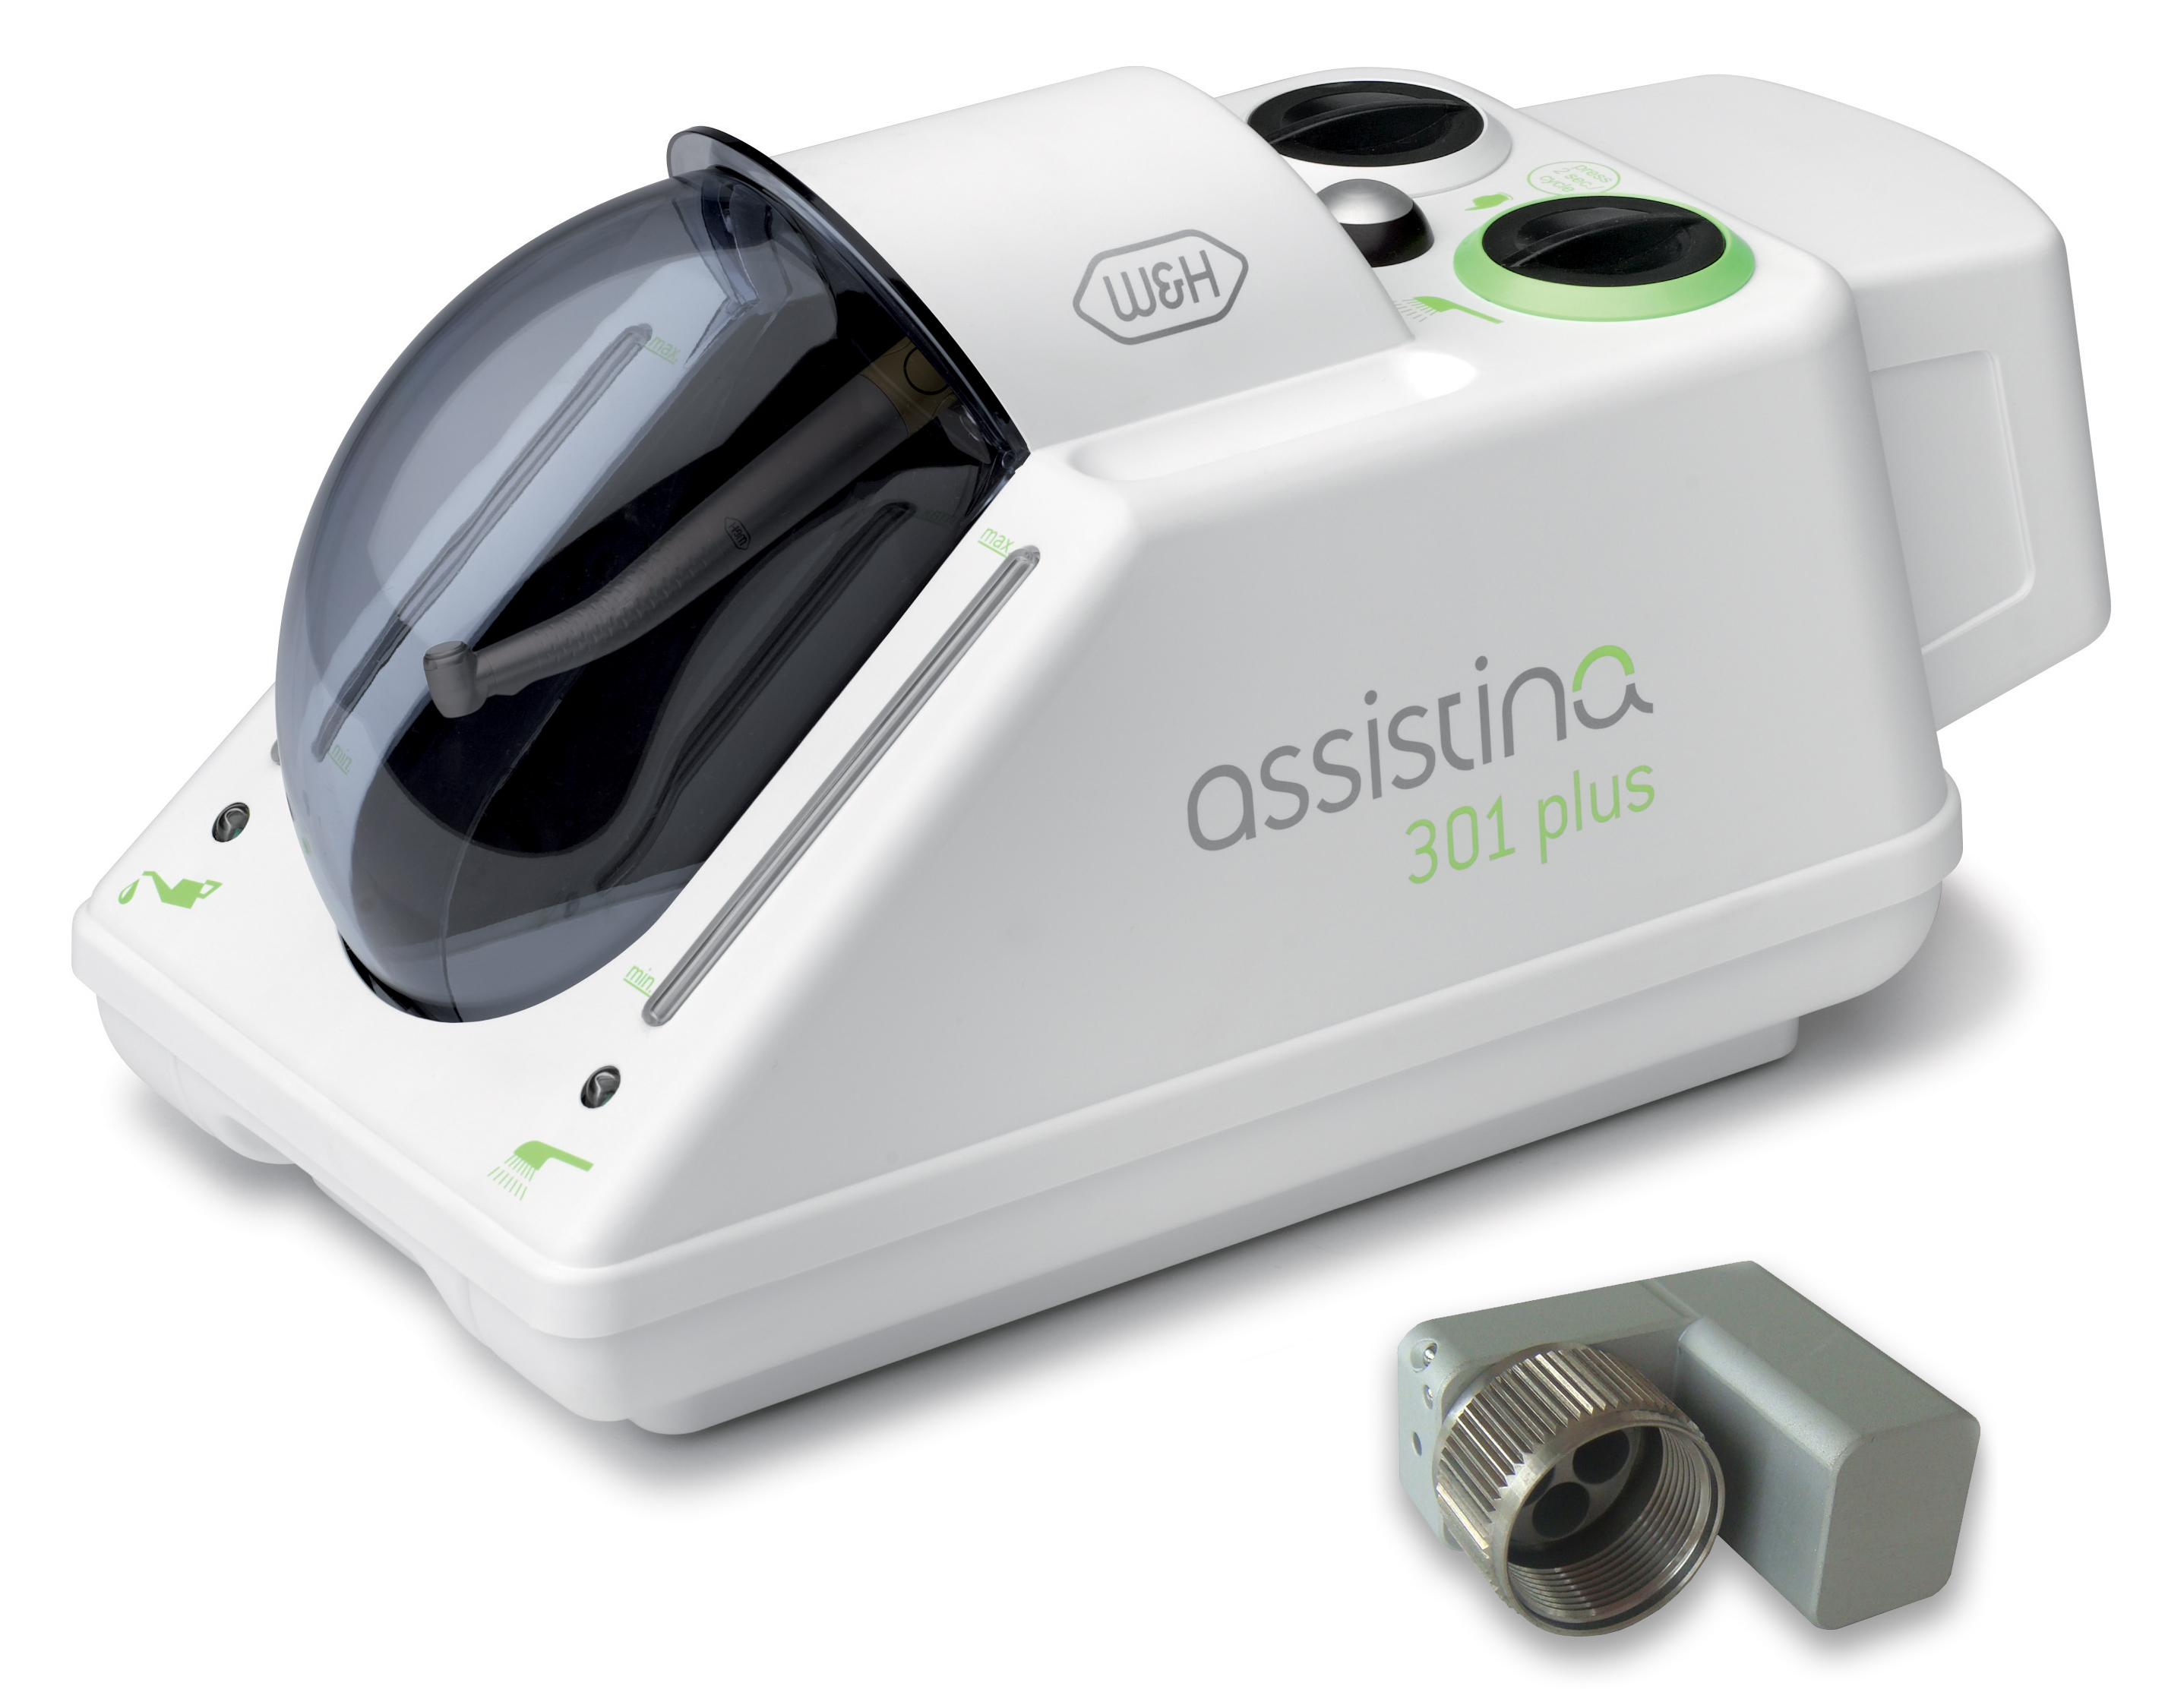 Аппарат для предстерилизационной очистки и смазки Assistina 301 plus W&H 00030140